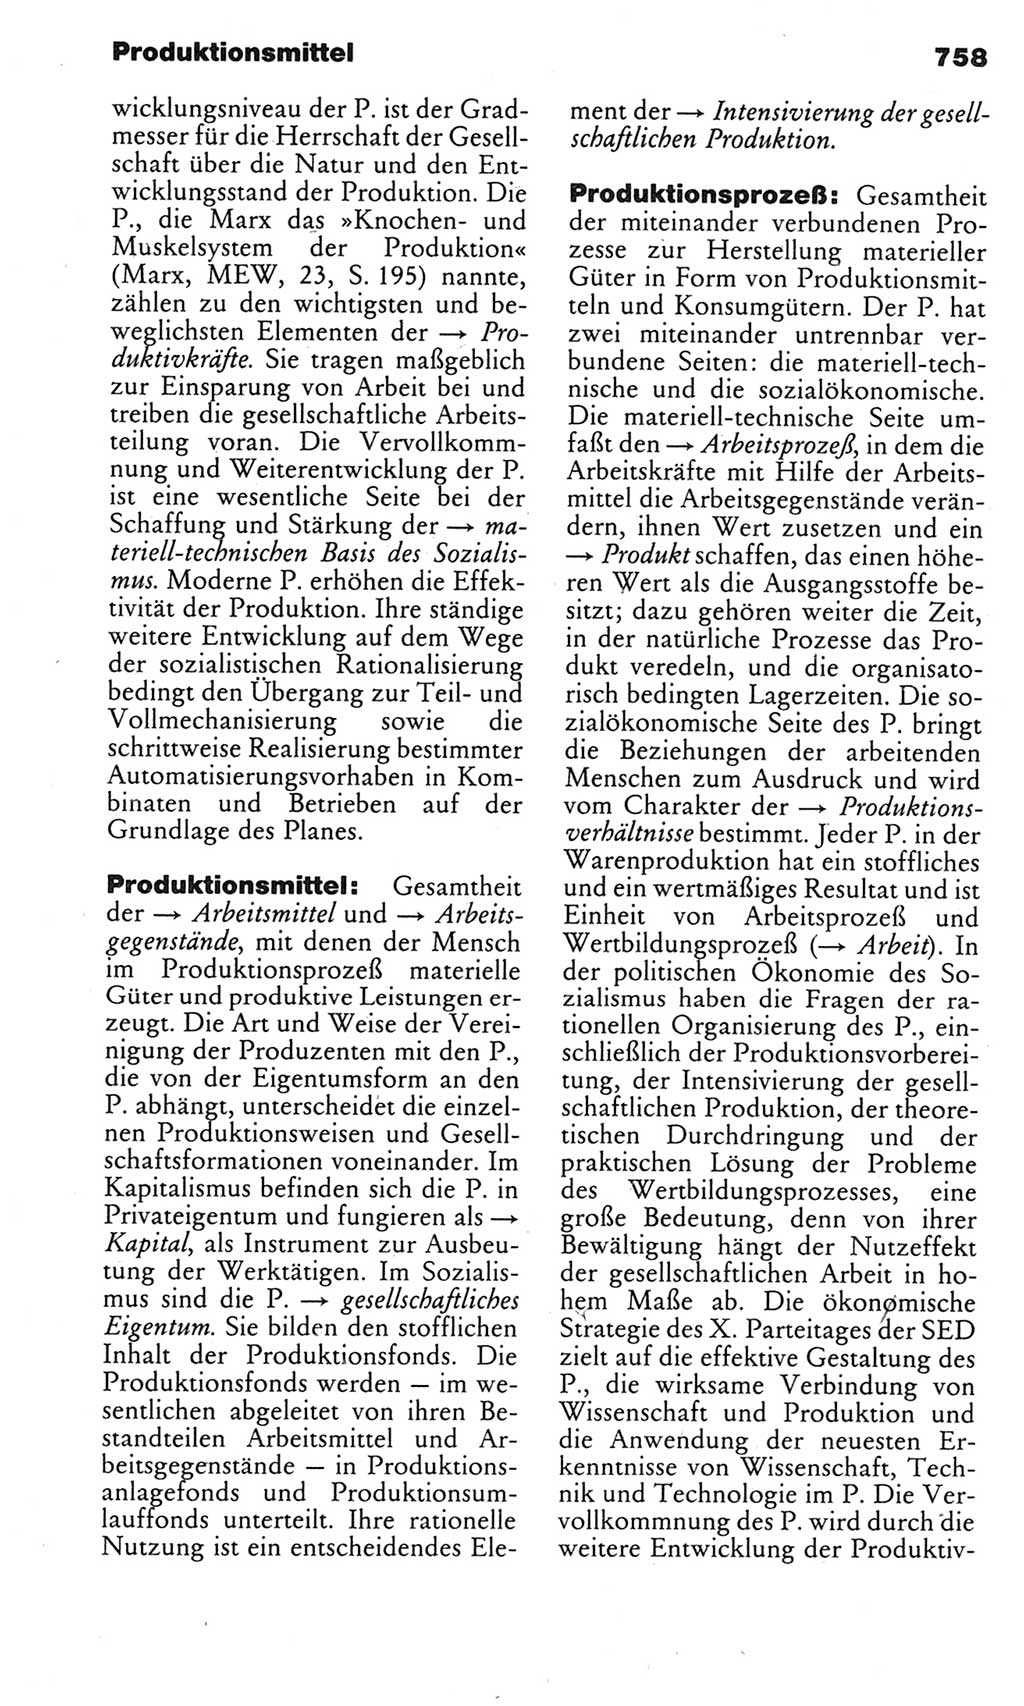 Kleines politisches Wörterbuch [Deutsche Demokratische Republik (DDR)] 1983, Seite 758 (Kl. pol. Wb. DDR 1983, S. 758)